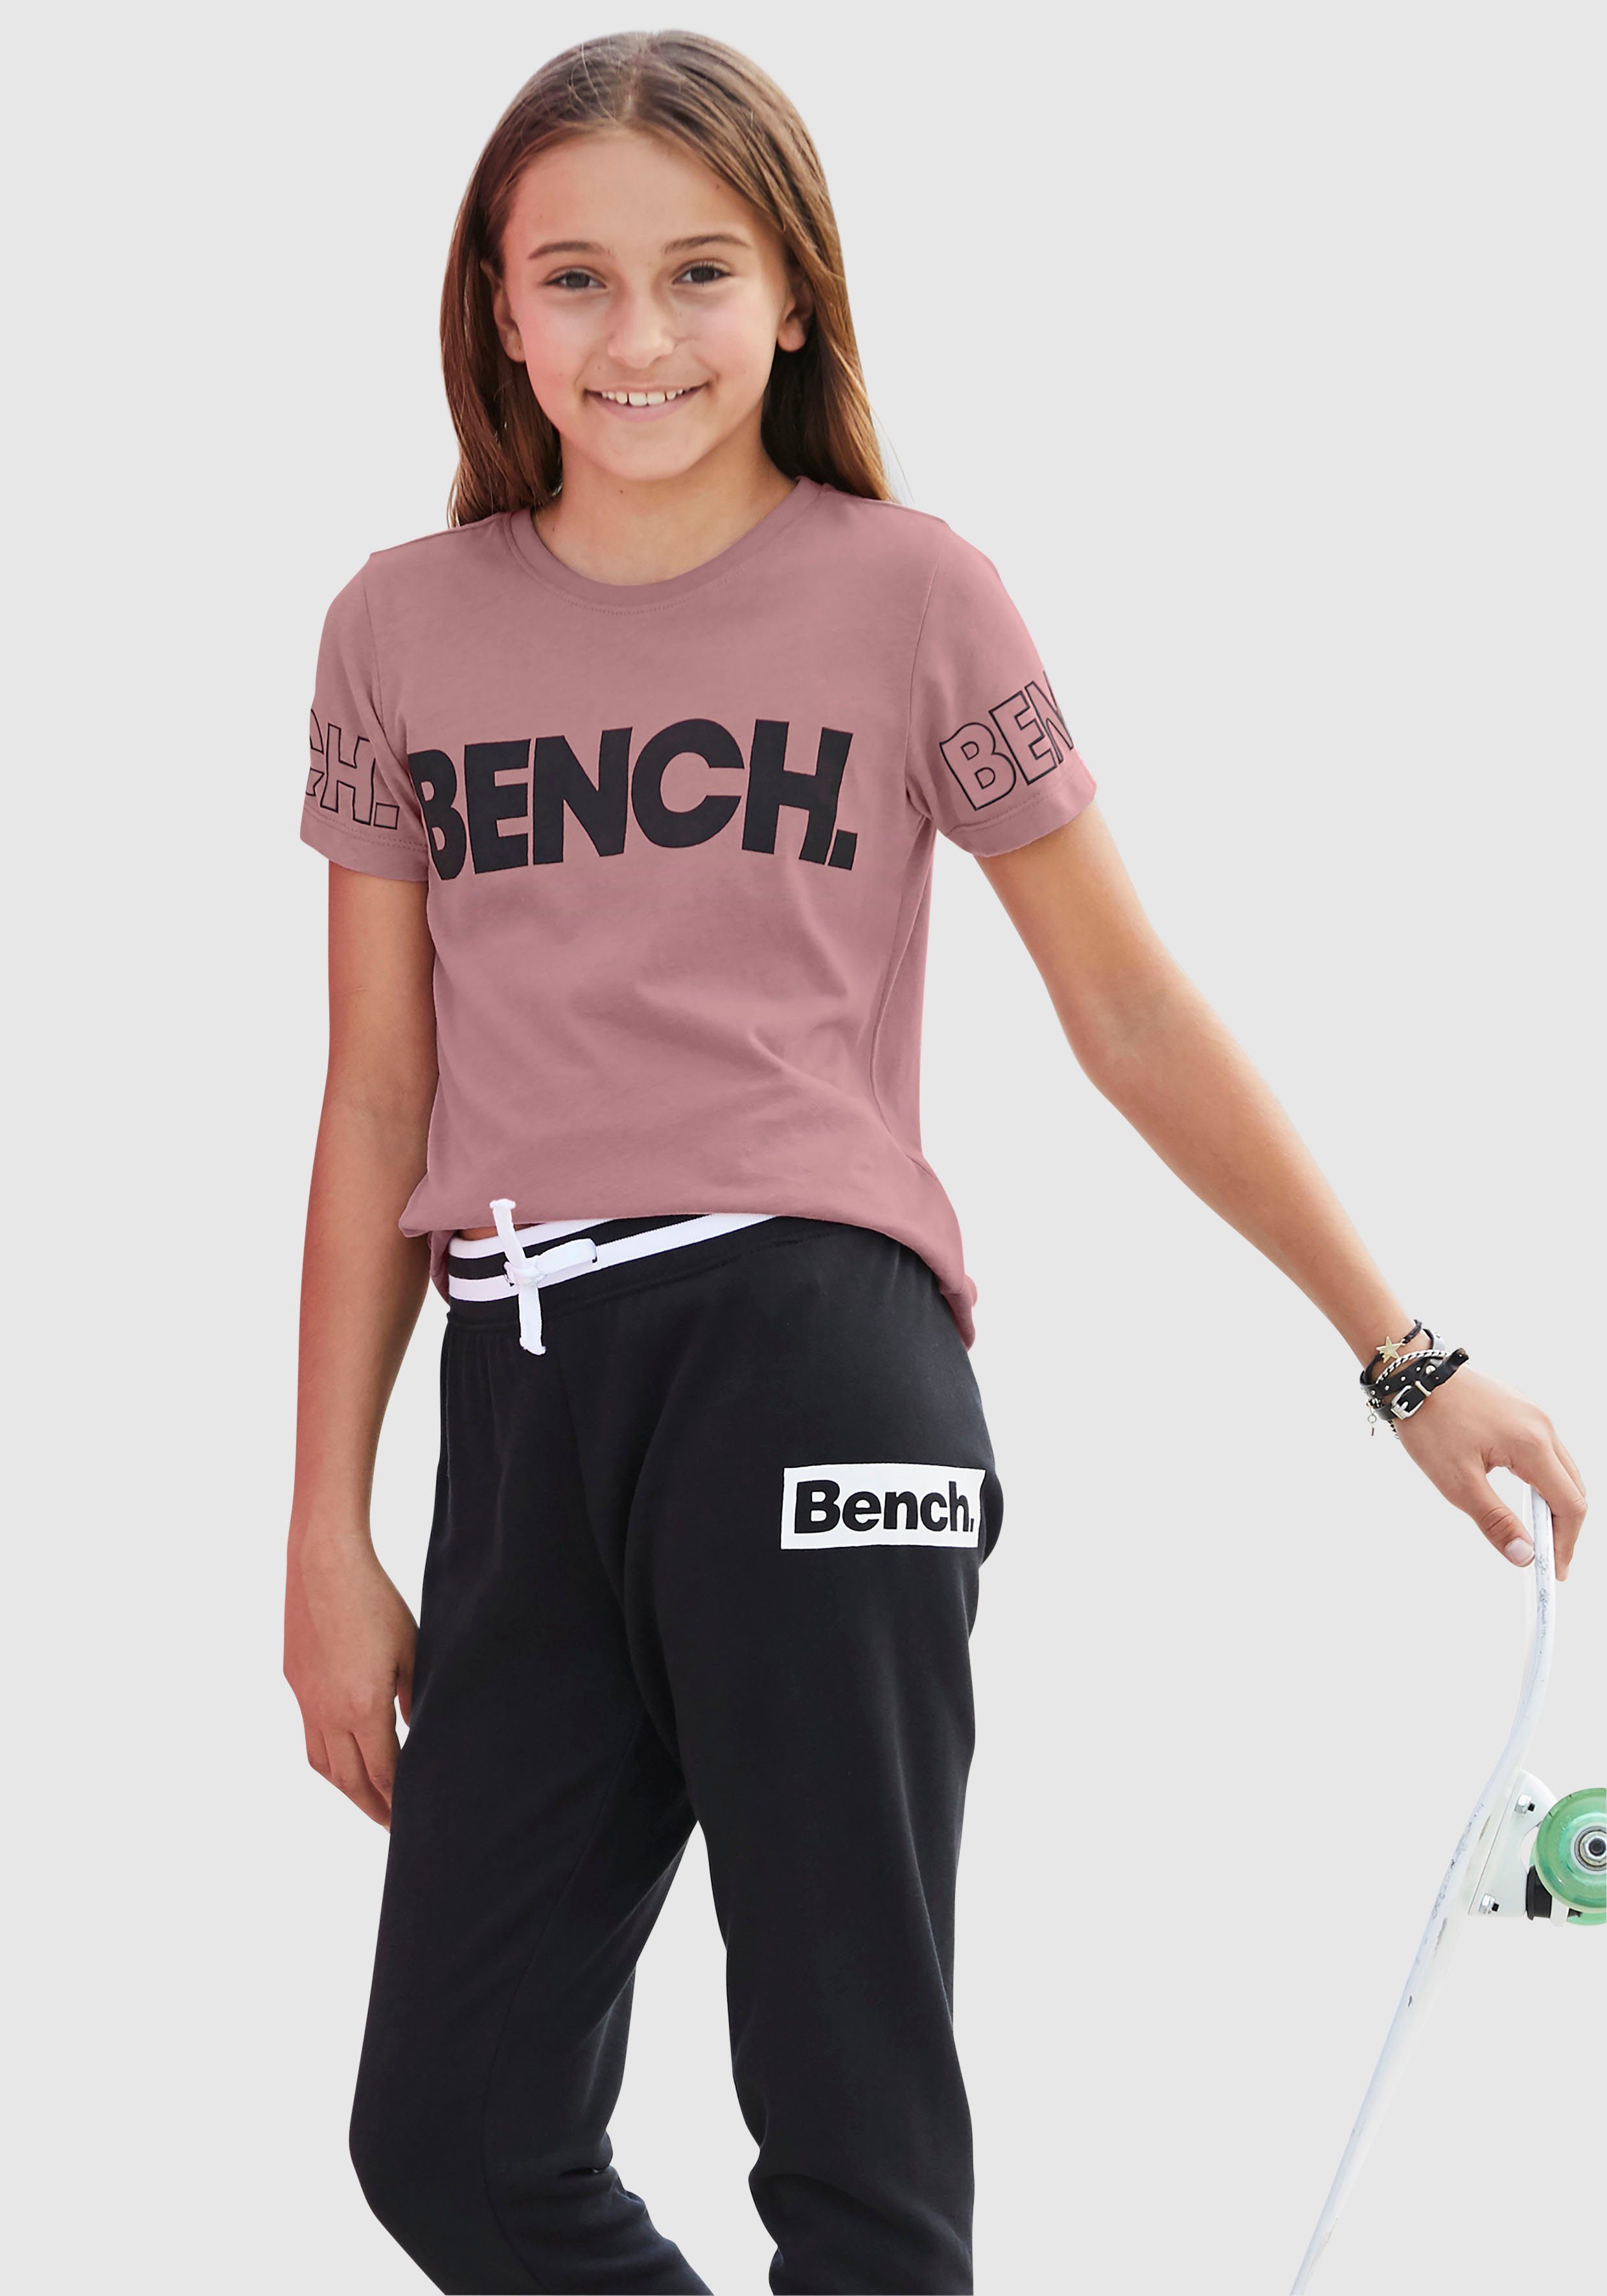 T-Shirt Bench. Bench-Logo-Drucken mit